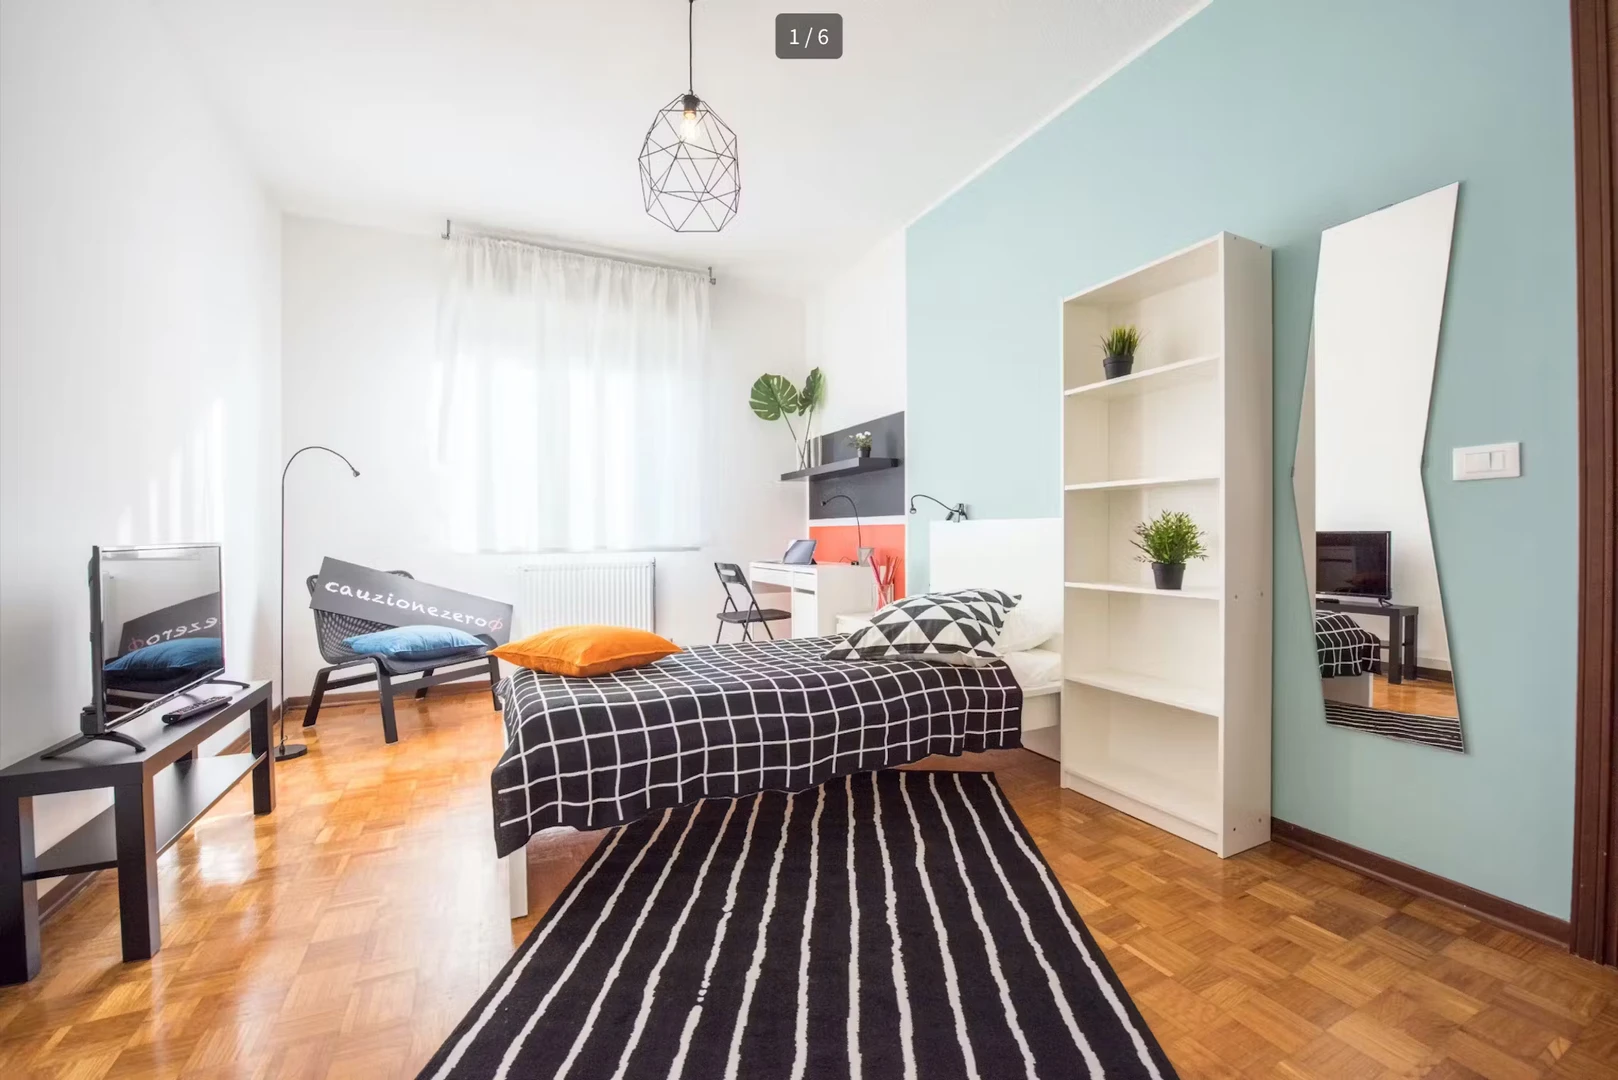 Alquiler de habitación en piso compartido en Verona